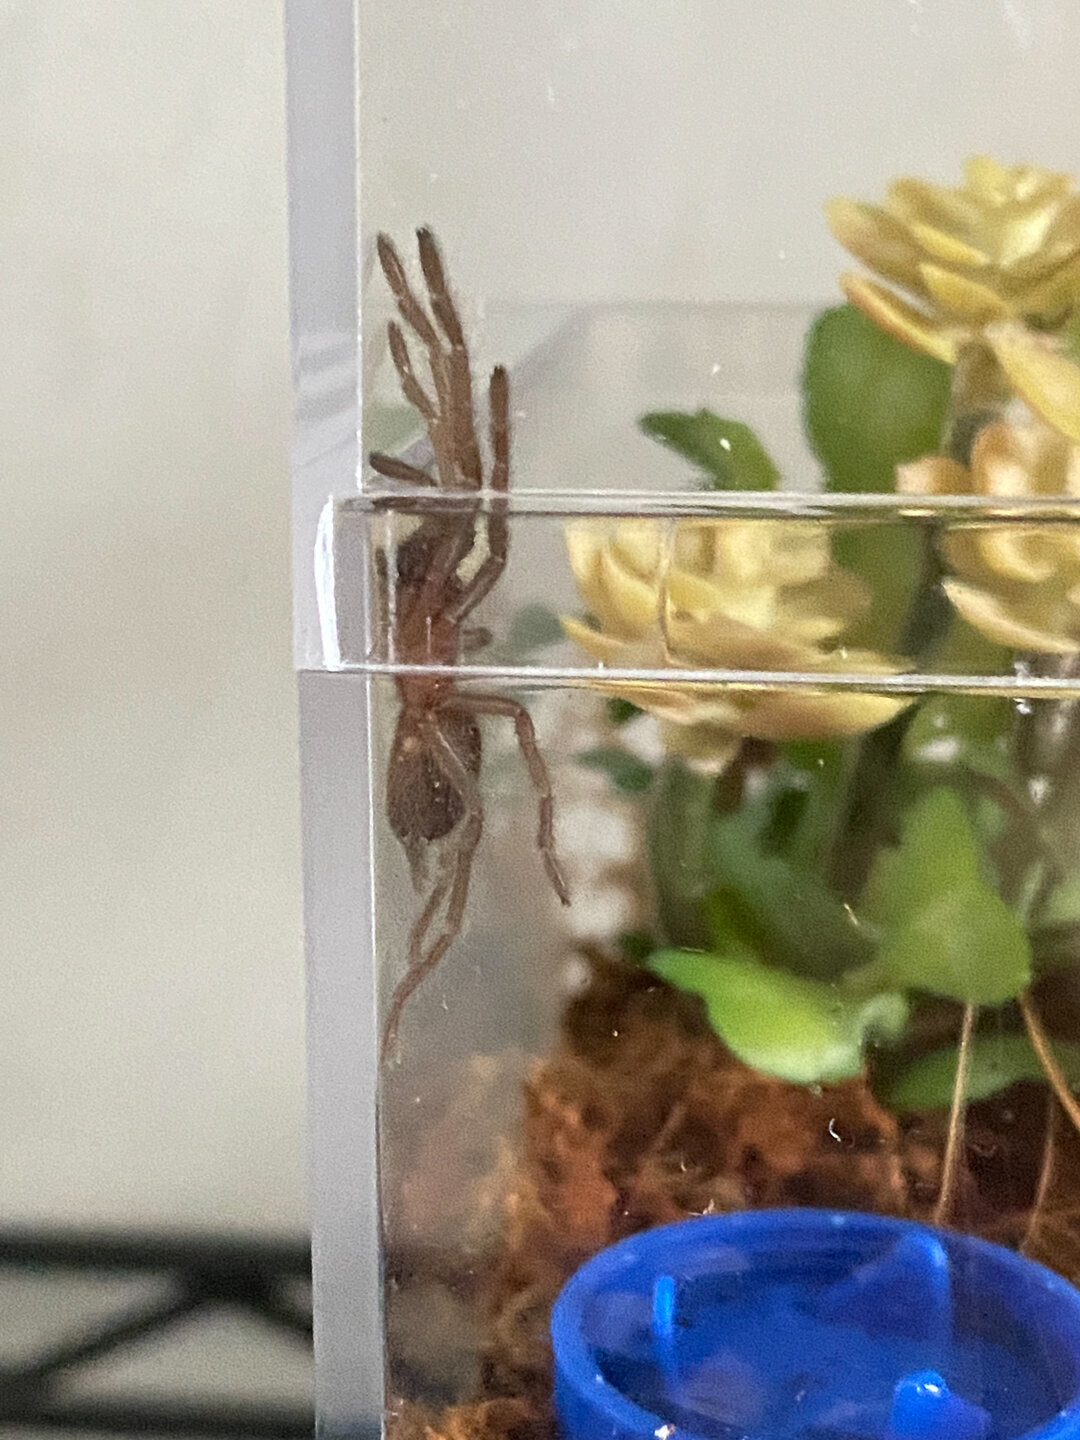 Australian Tarantula (Phlogius sp. - Kuranda)